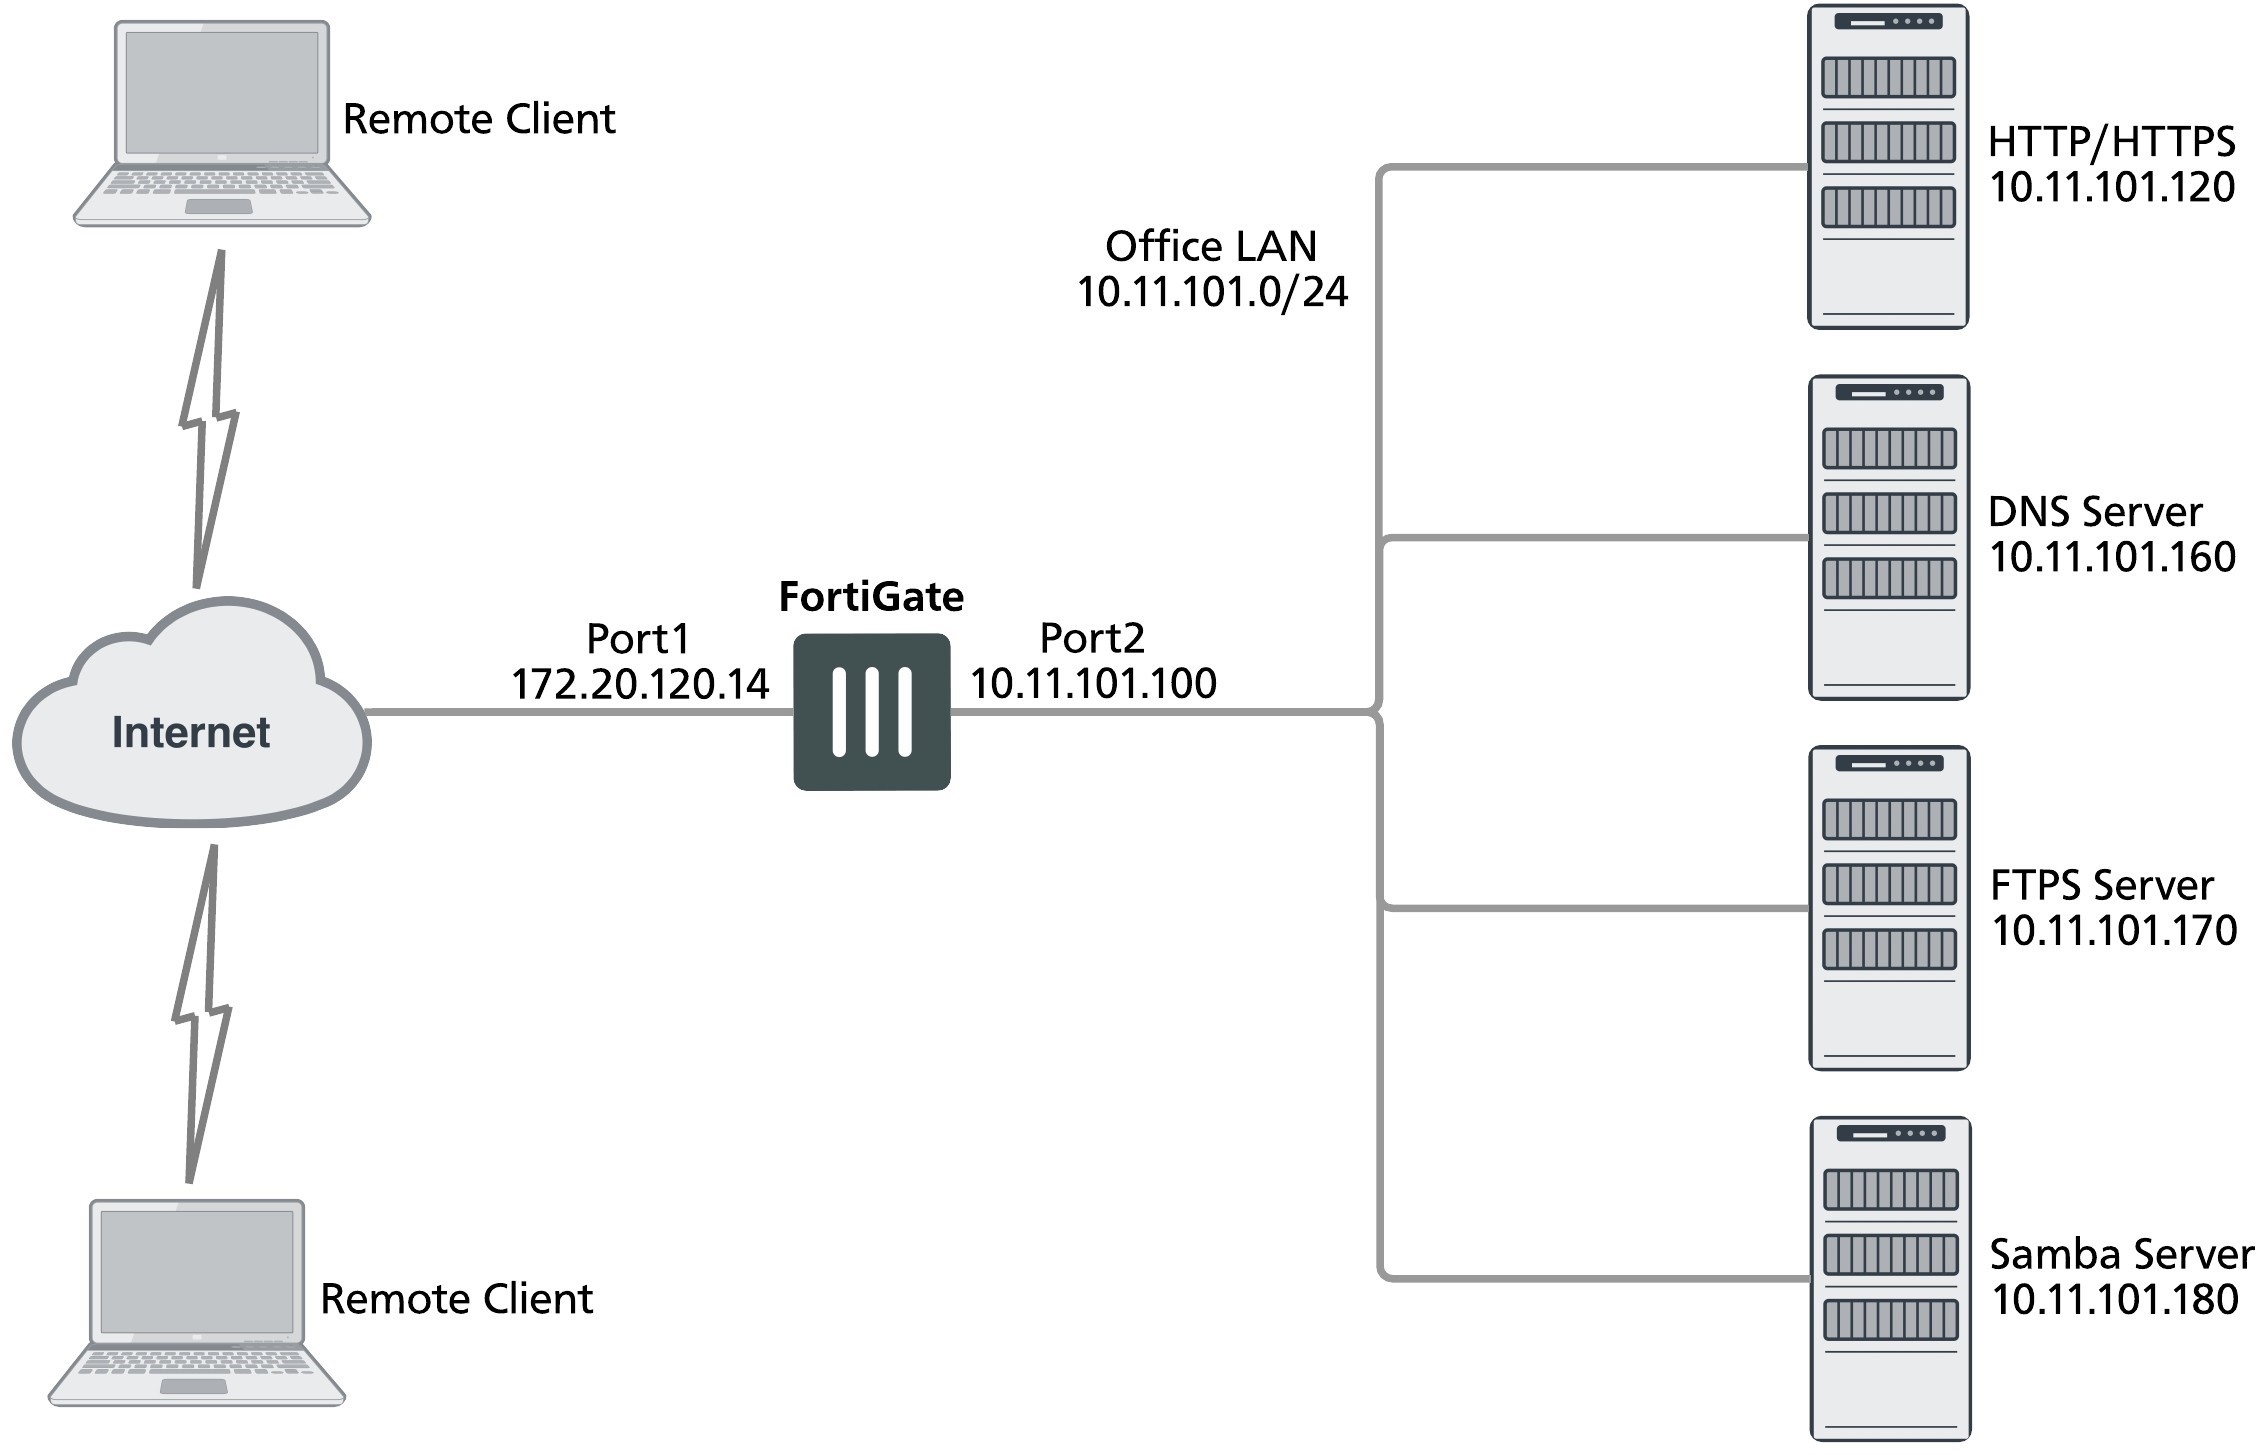 fortigate vpn client configuration utility